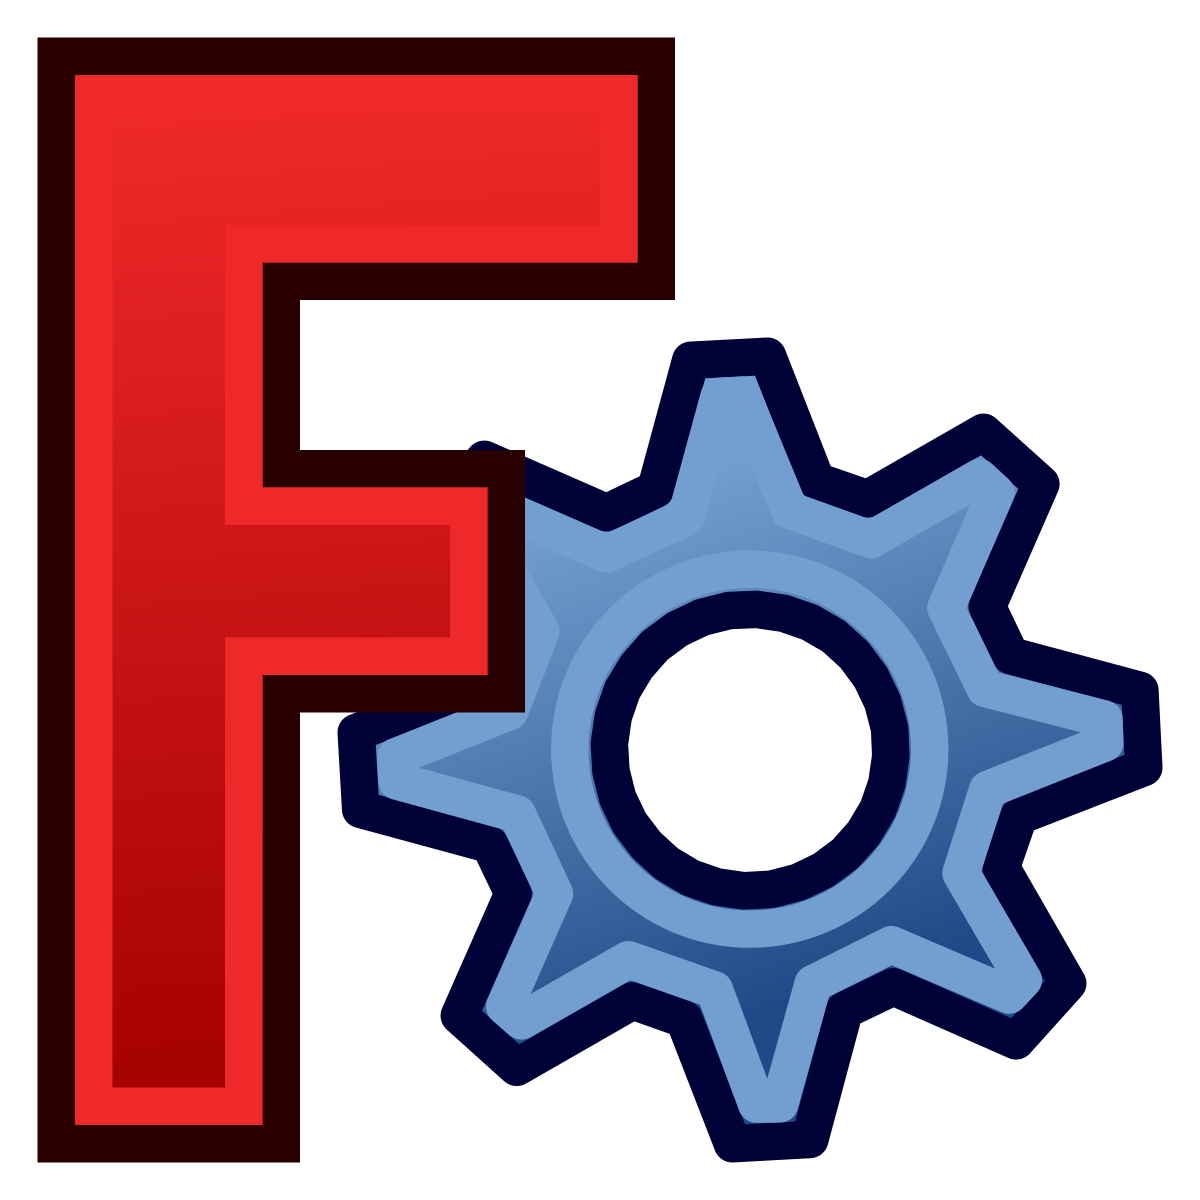 Archivo:FreeCAD-logo.svg - Wikipedia, la enciclopedia libre